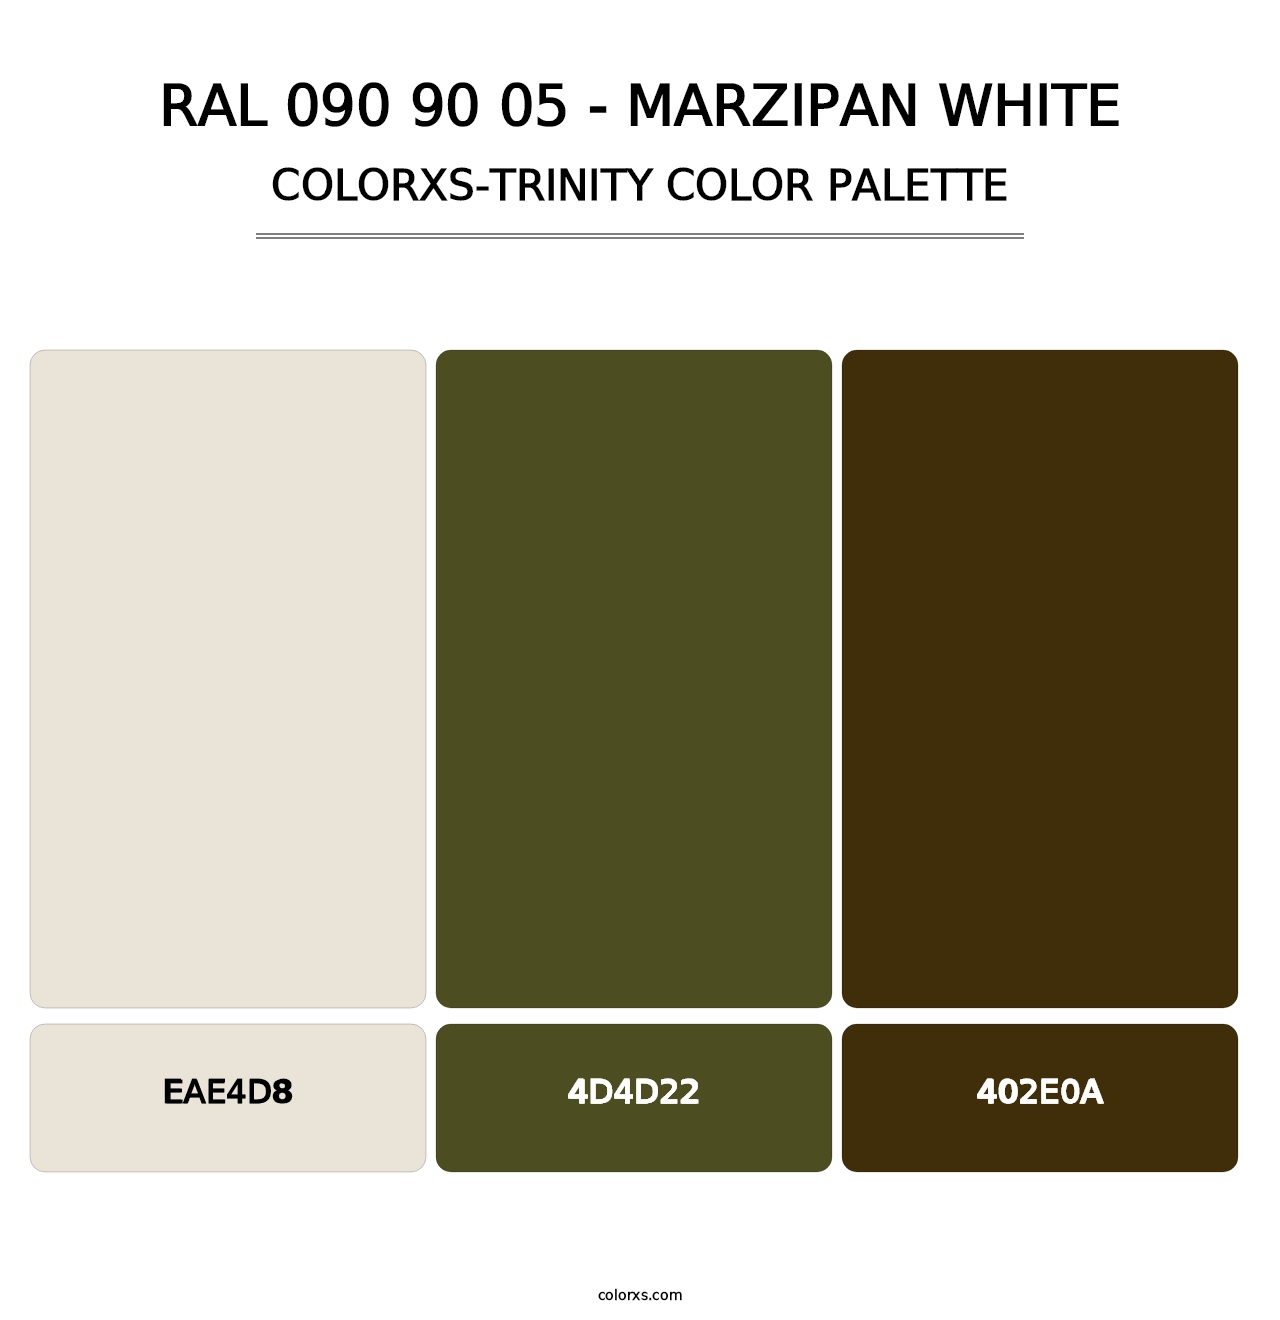 RAL 090 90 05 - Marzipan White - Colorxs Trinity Palette